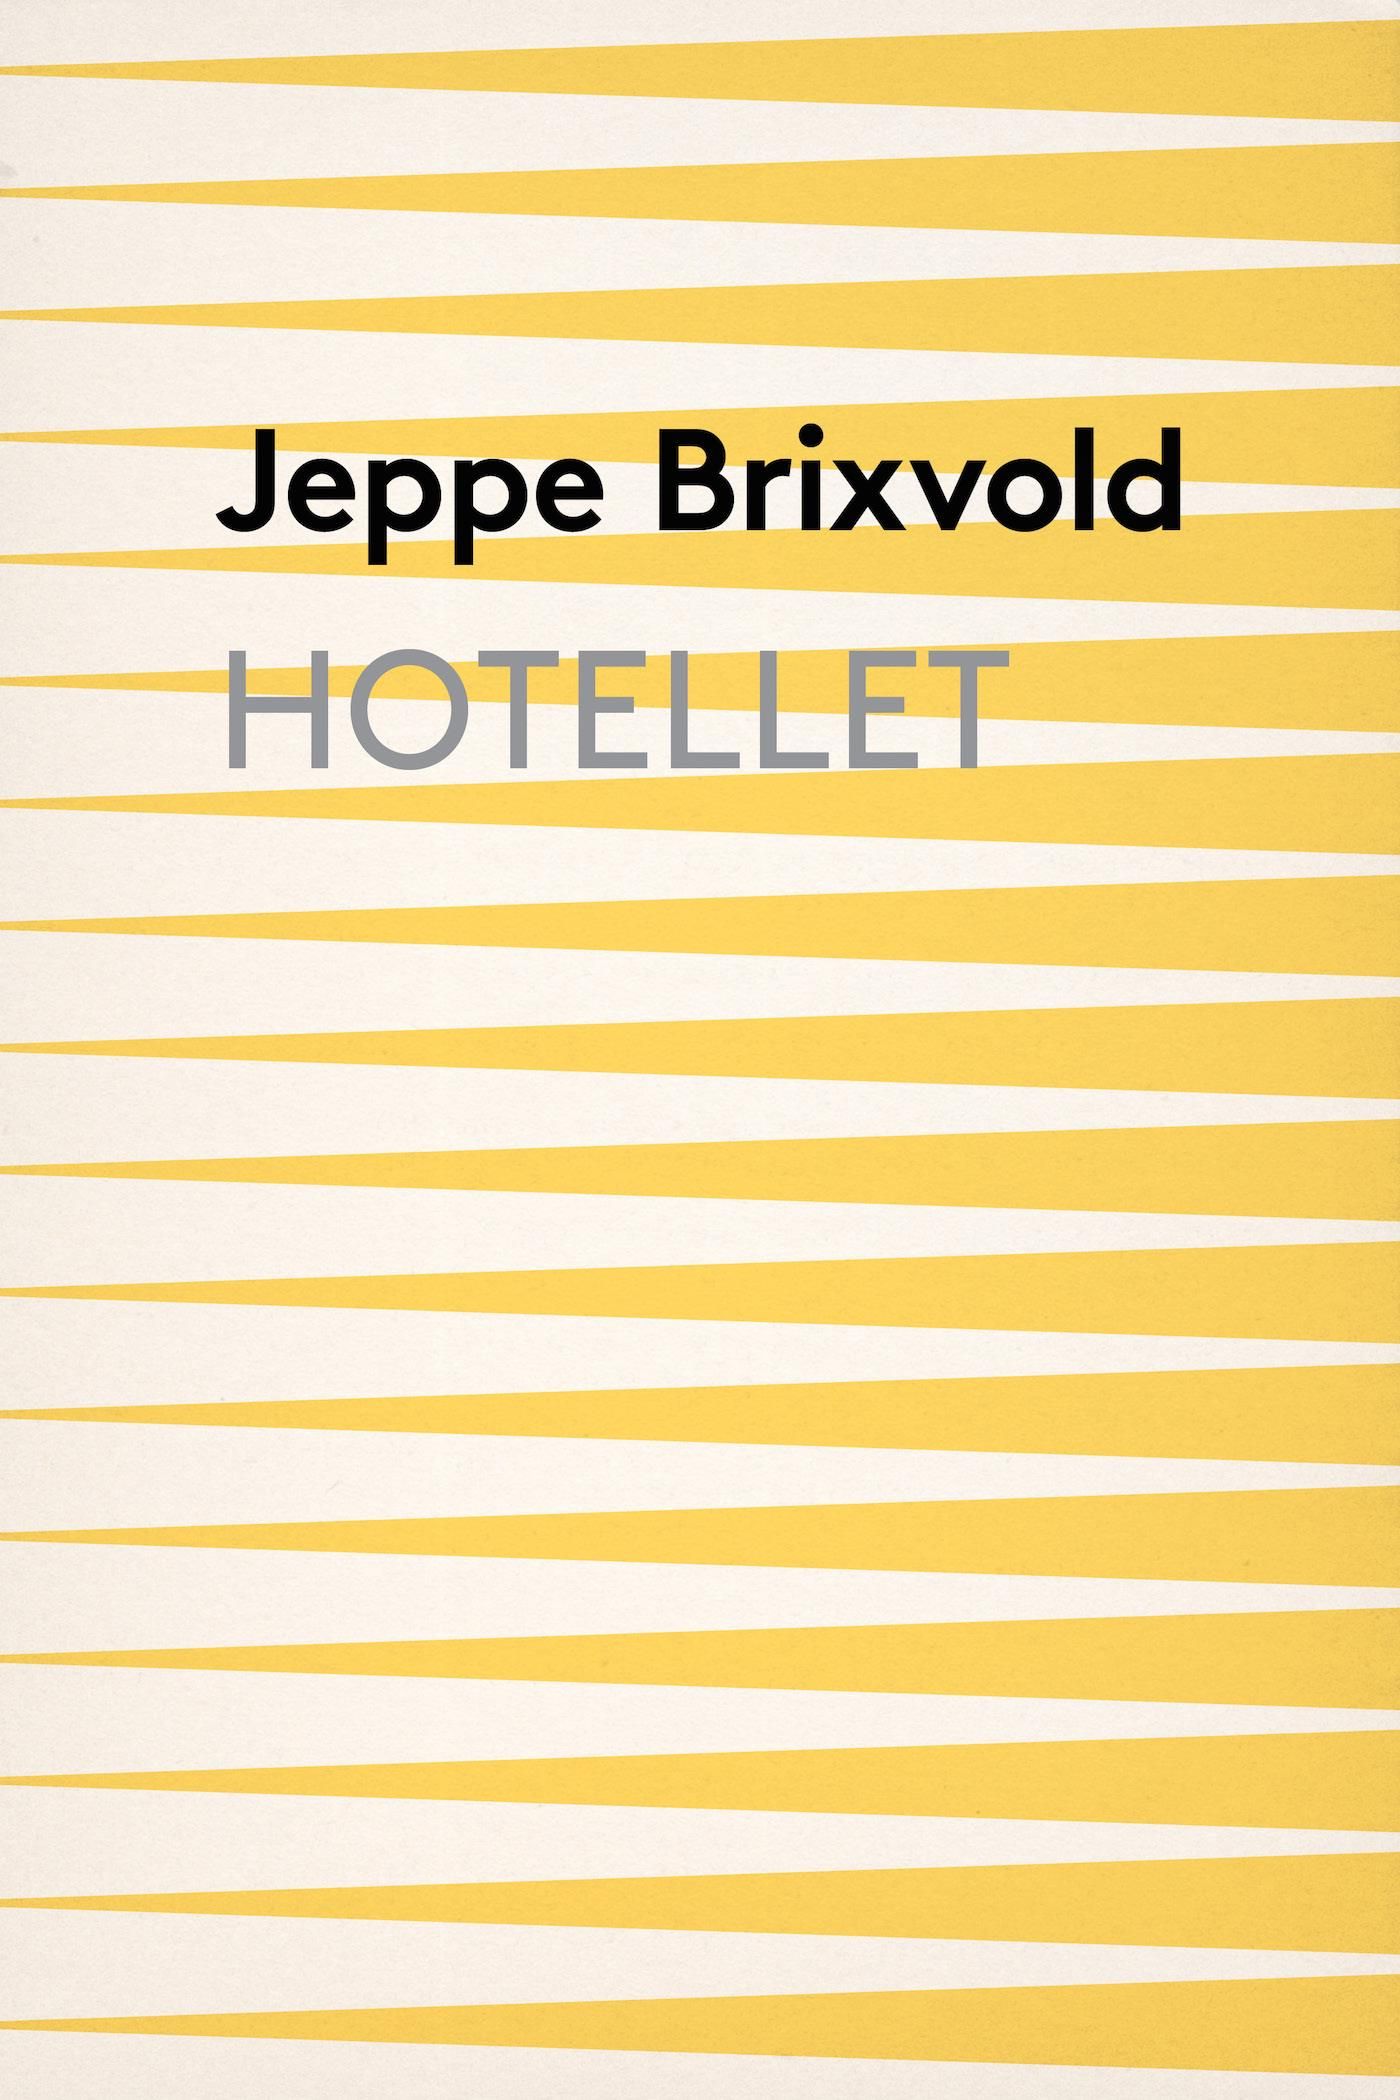 Hotellet, eBook by Jeppe Brixvold